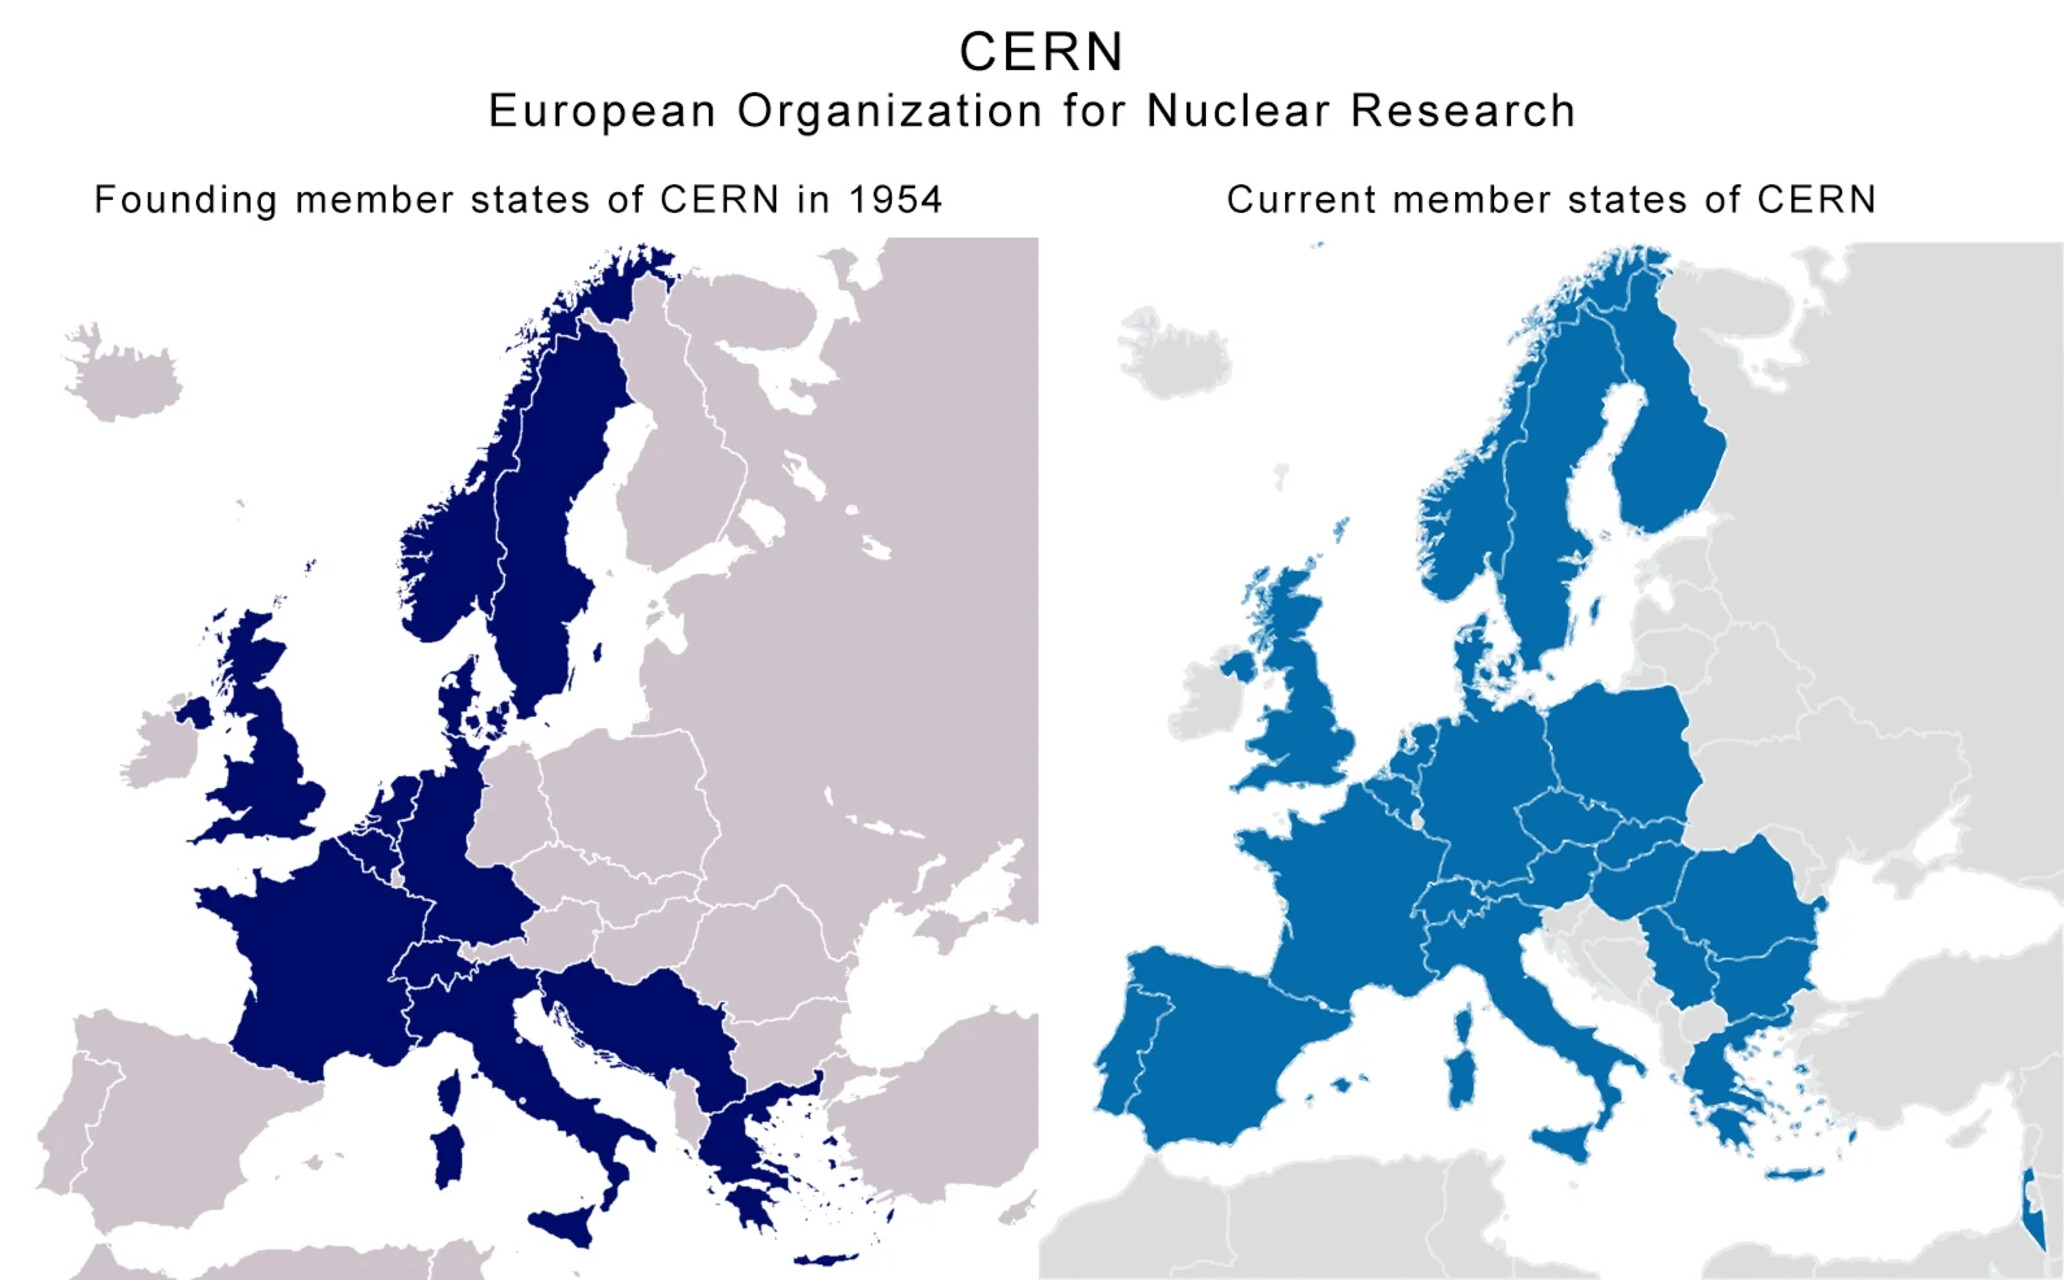 Brazilia: două hărți cu o comparație între țările fondatoare și actualele state membre ale CERN